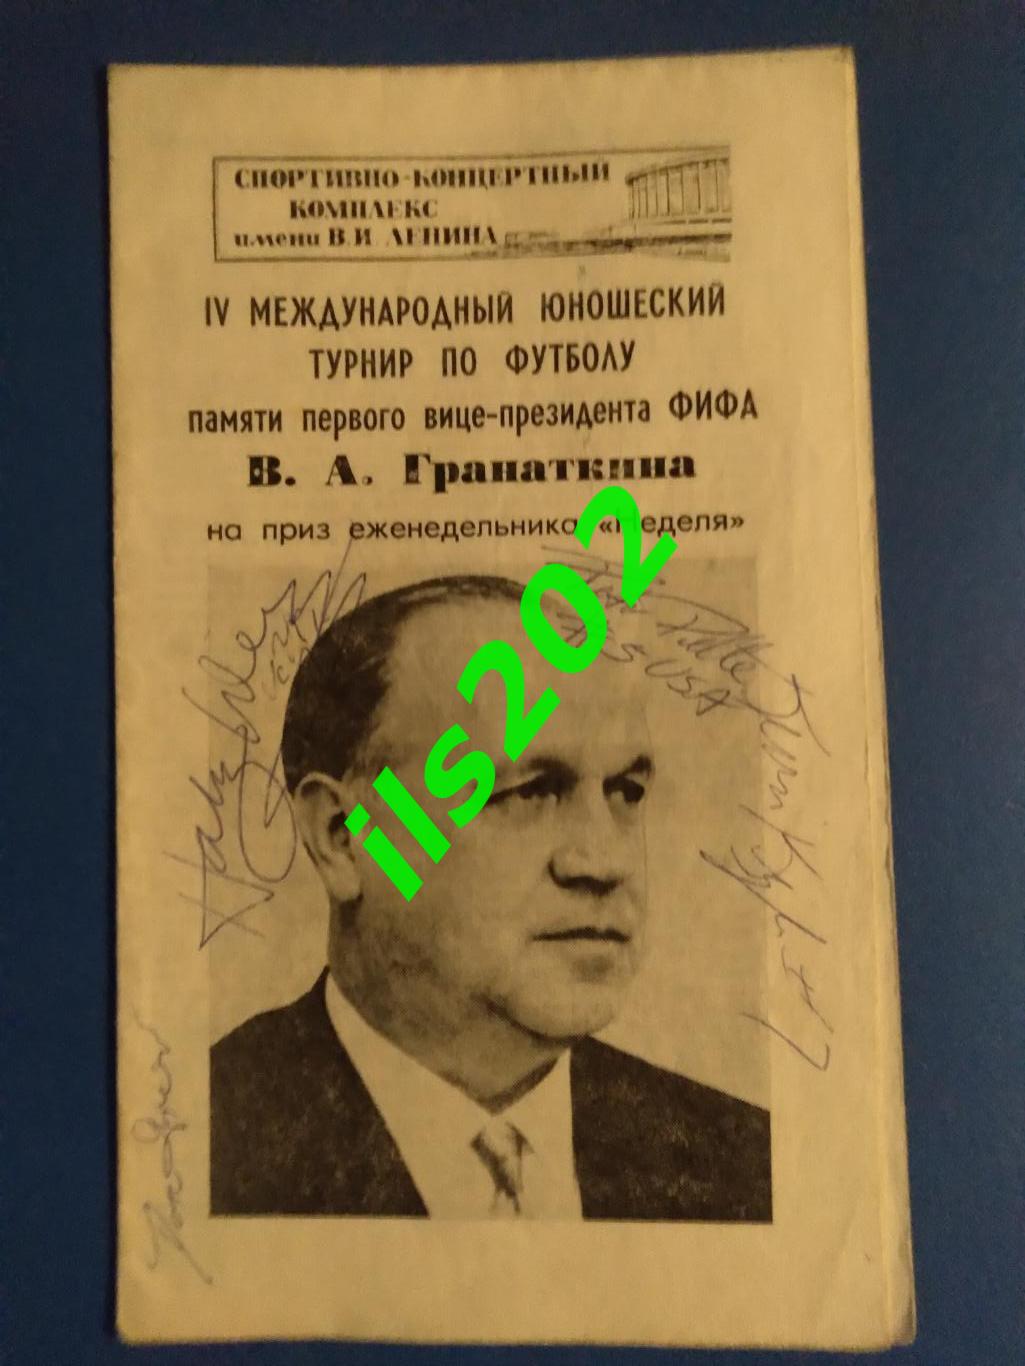 турнир памяти В.А. Гранаткина 1984 (сборная СССР юношеская) автографы